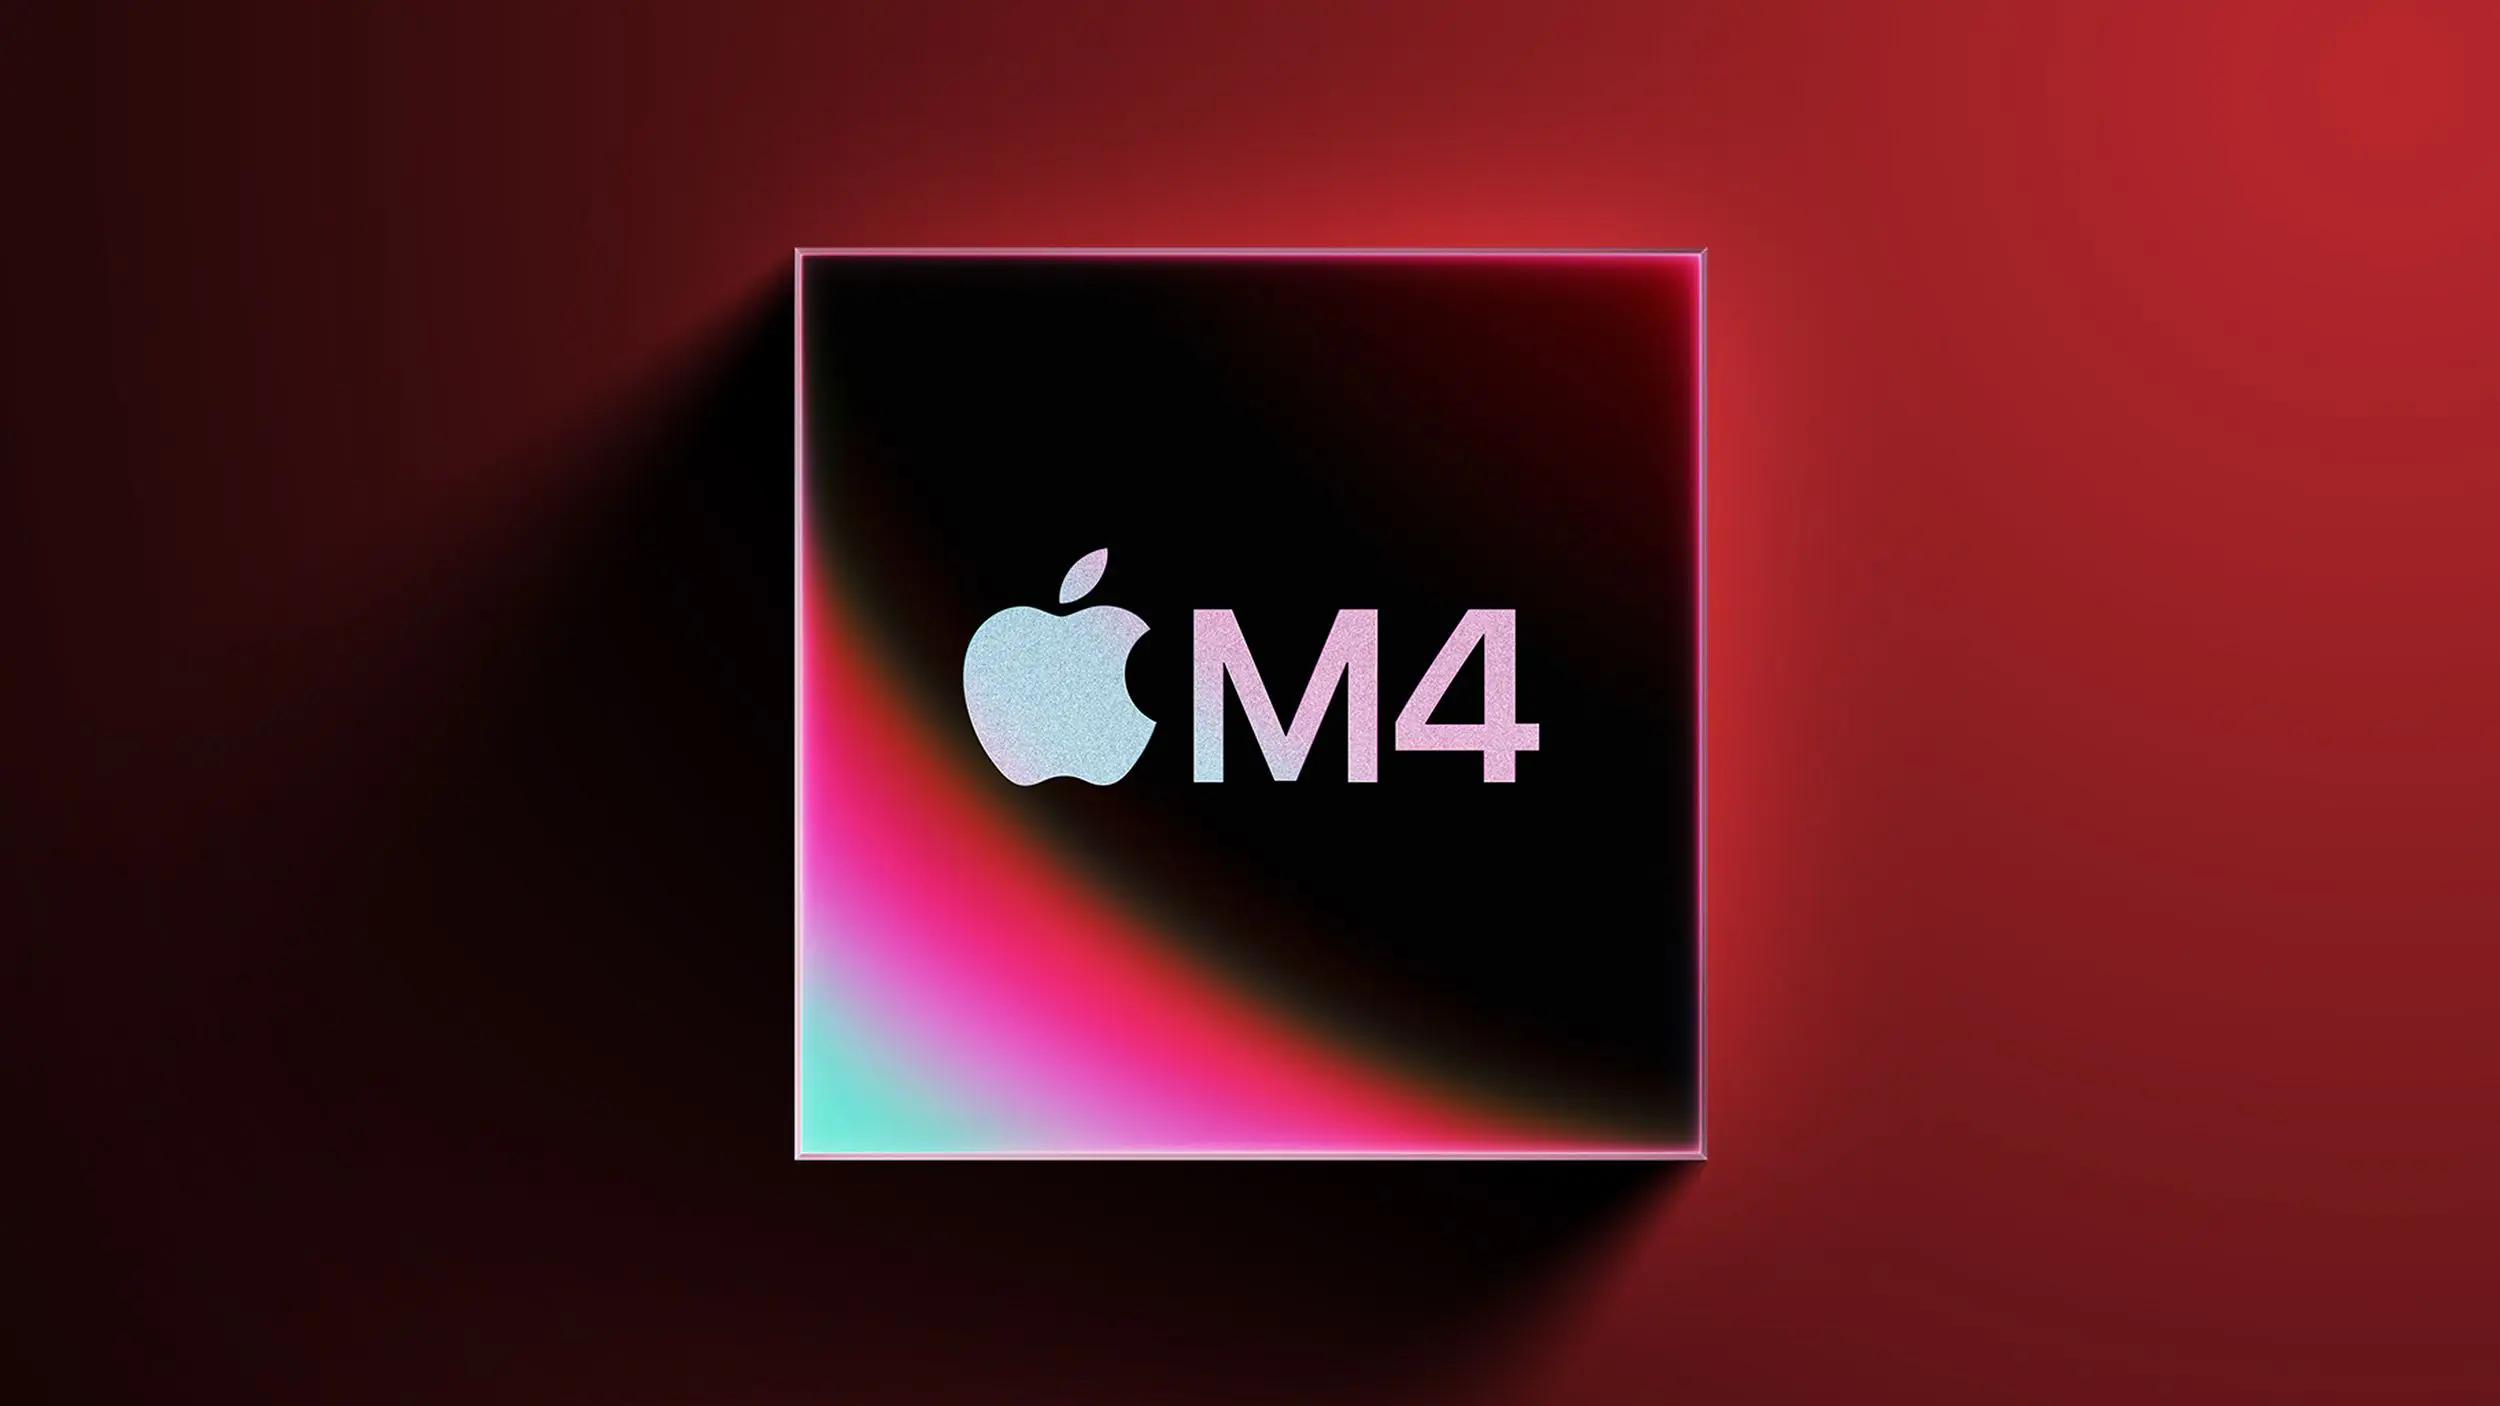 MacBook Pro M4 sẽ được ra mắt vào cuối năm nay